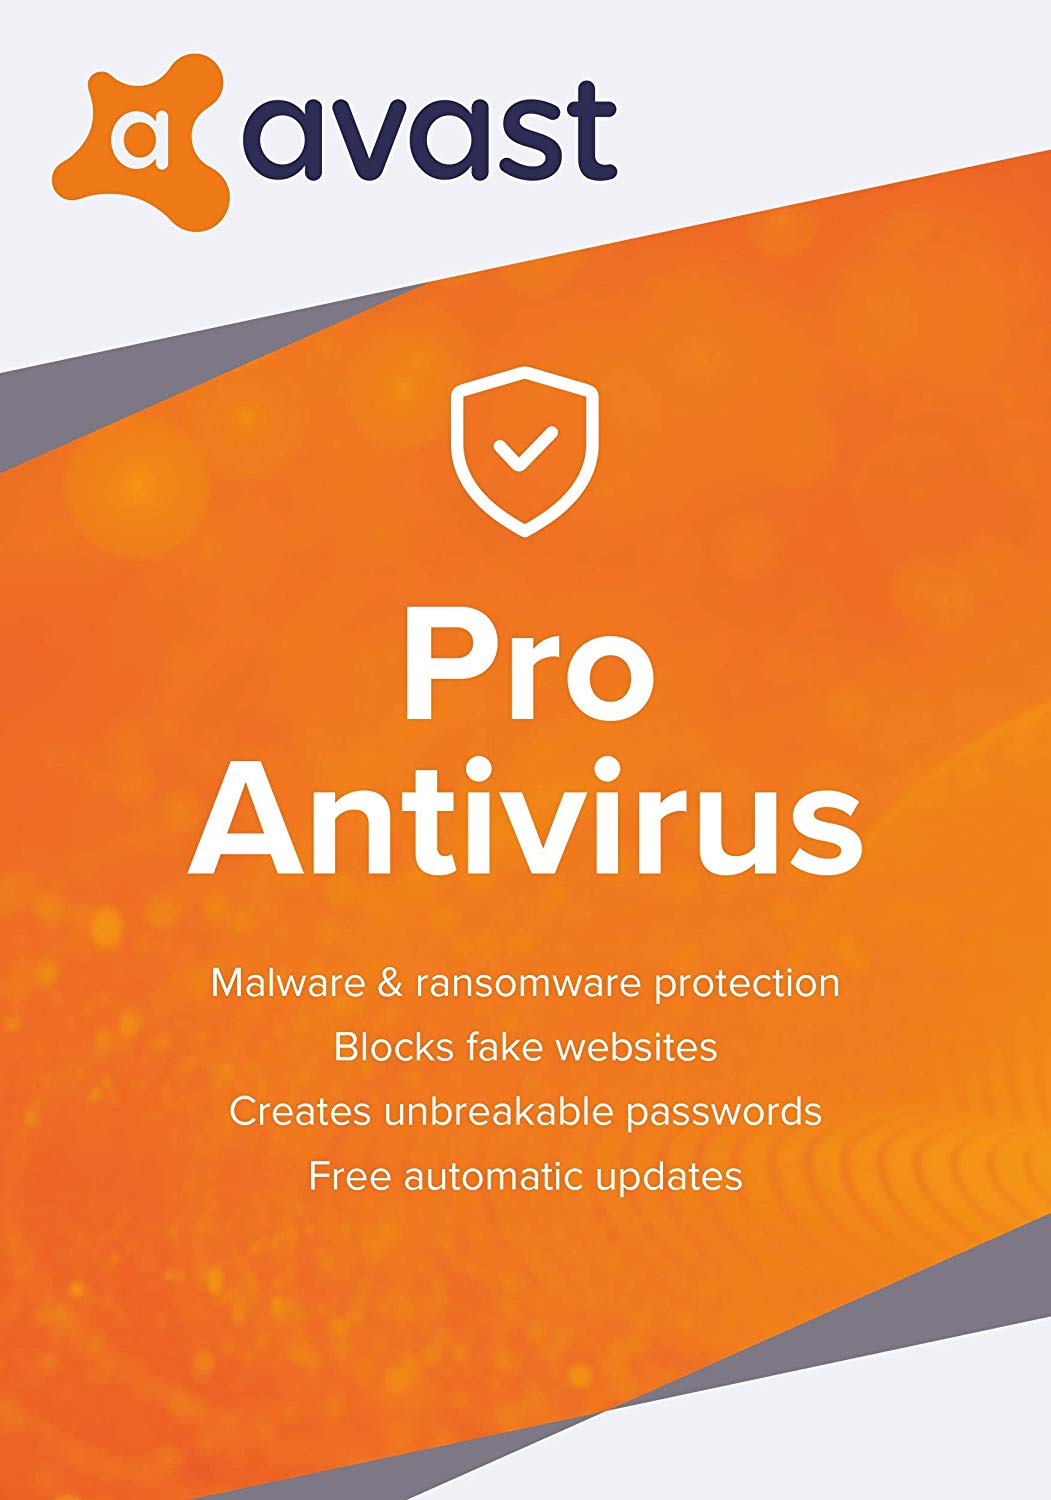 how many computers can i install avast pro antivirus